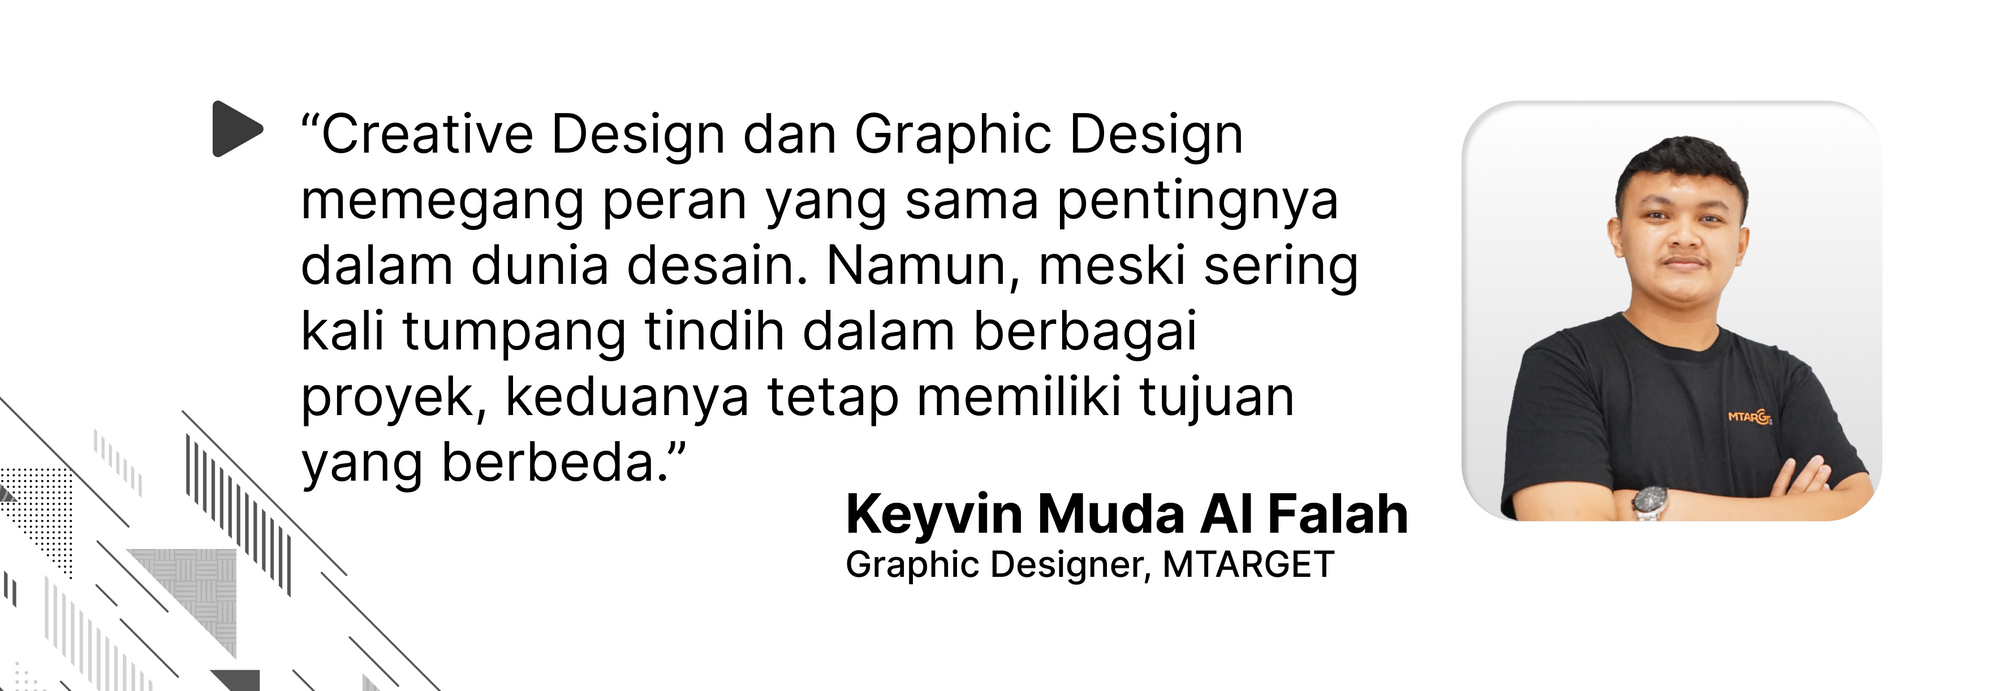 Quote oleh Keyvin Muda Al Falah mengenai perbedaan Creative Design dan Graphic Design yang sering kali bersinggungan, namun tetap memiliki tujuan yang berbeda.